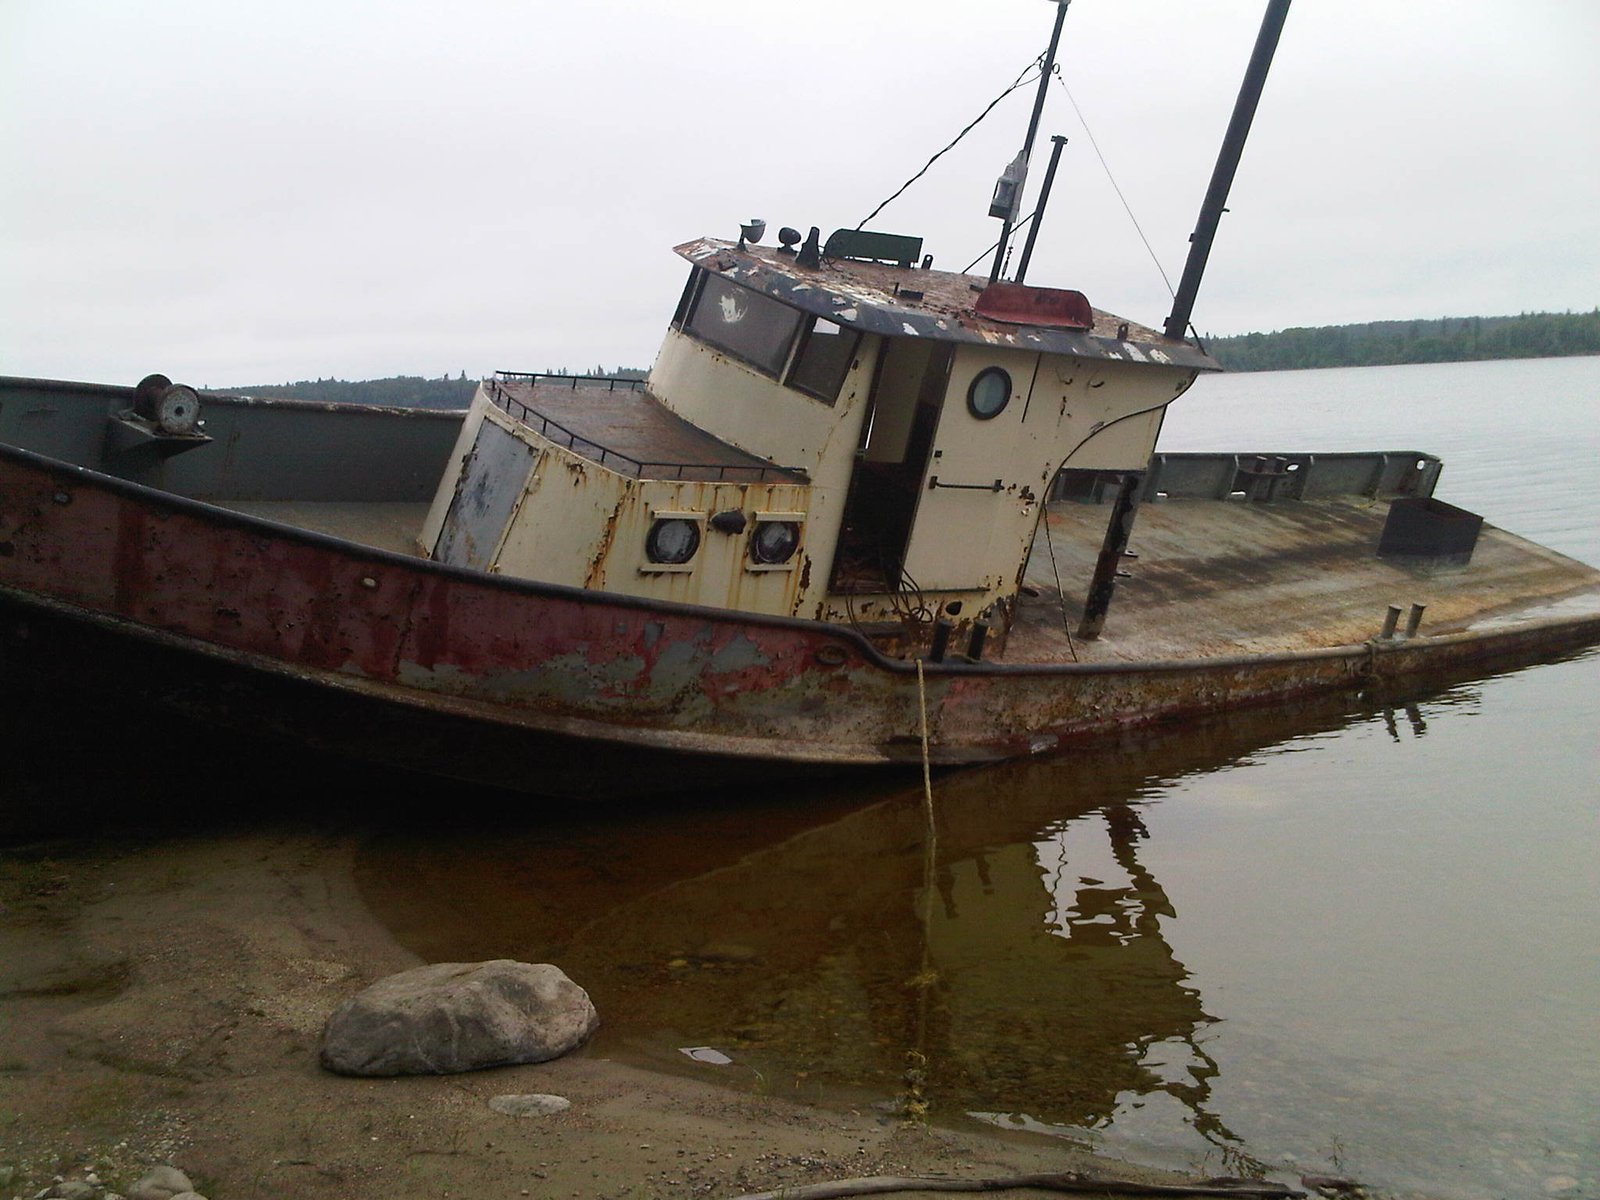 Abandoned ship